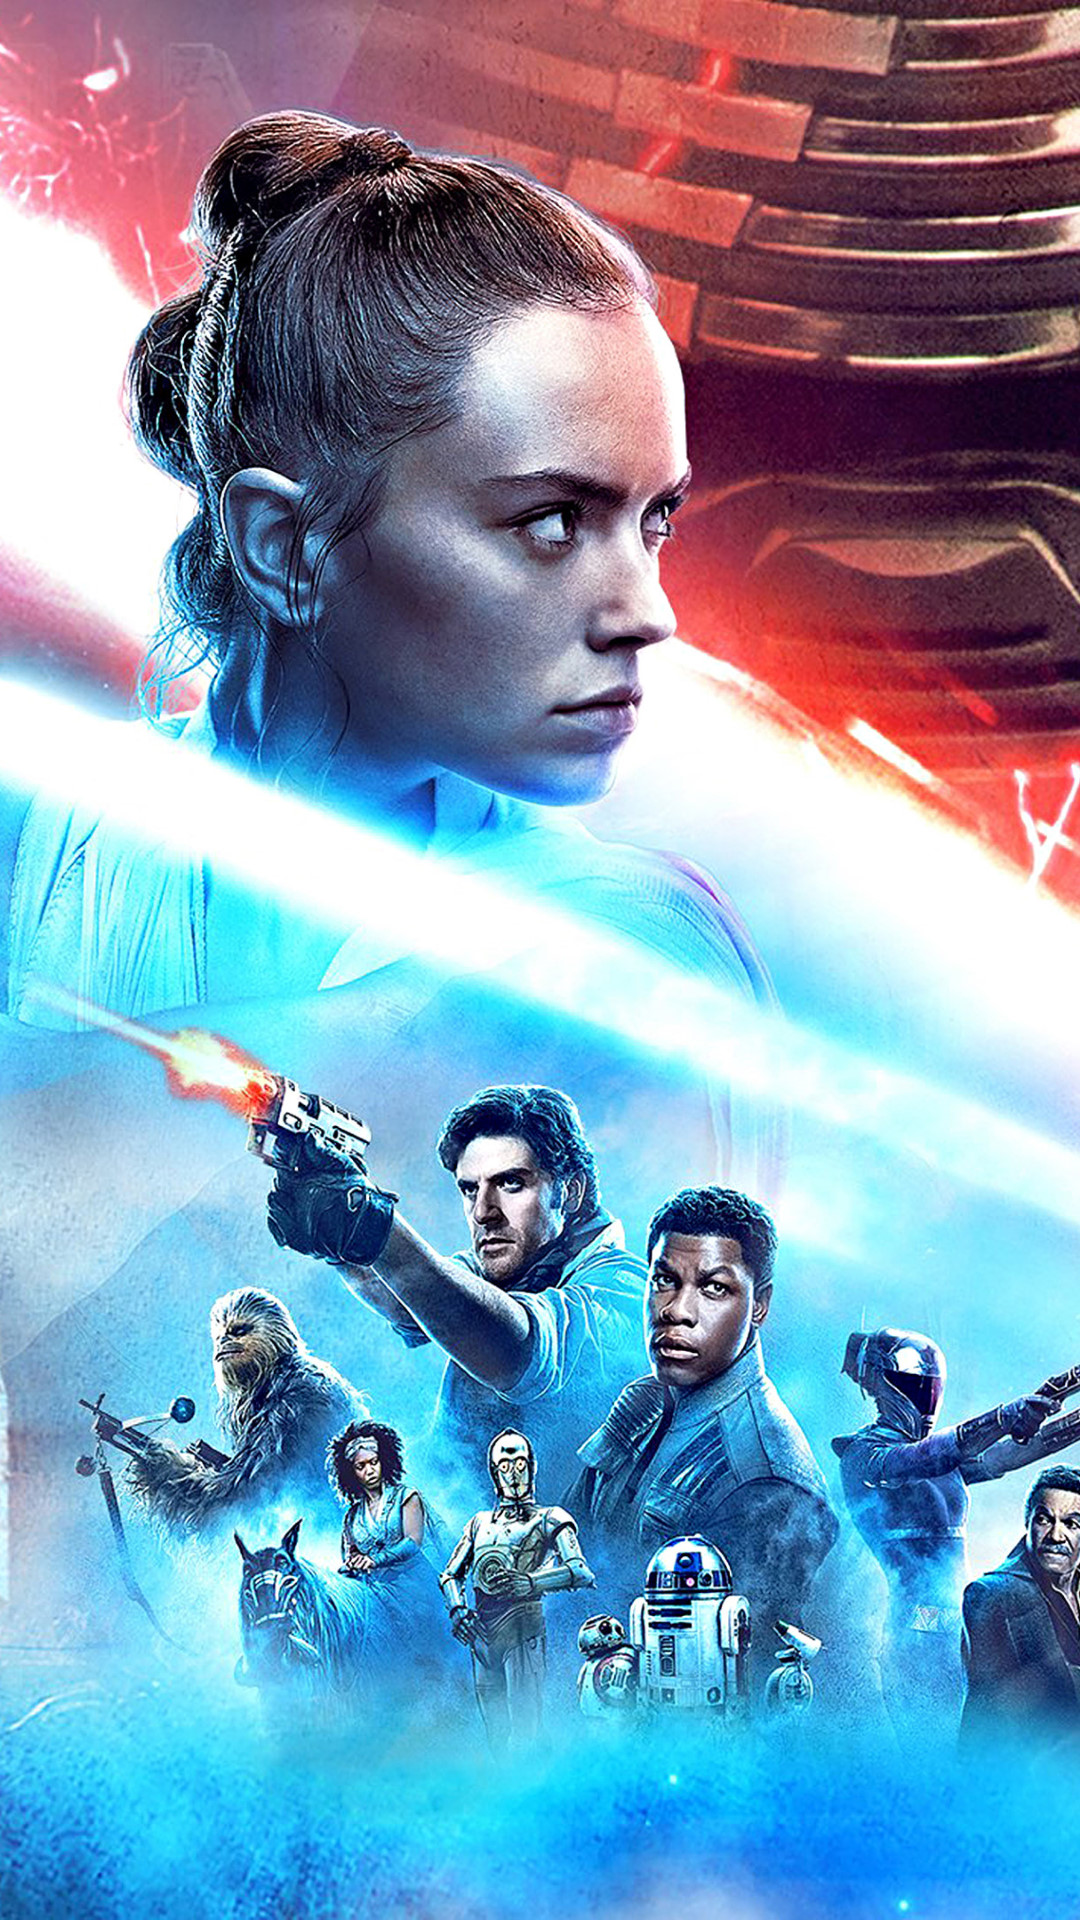 Episode IX Star Wars: The Rise of Skywalker wallpaper 1080x1920